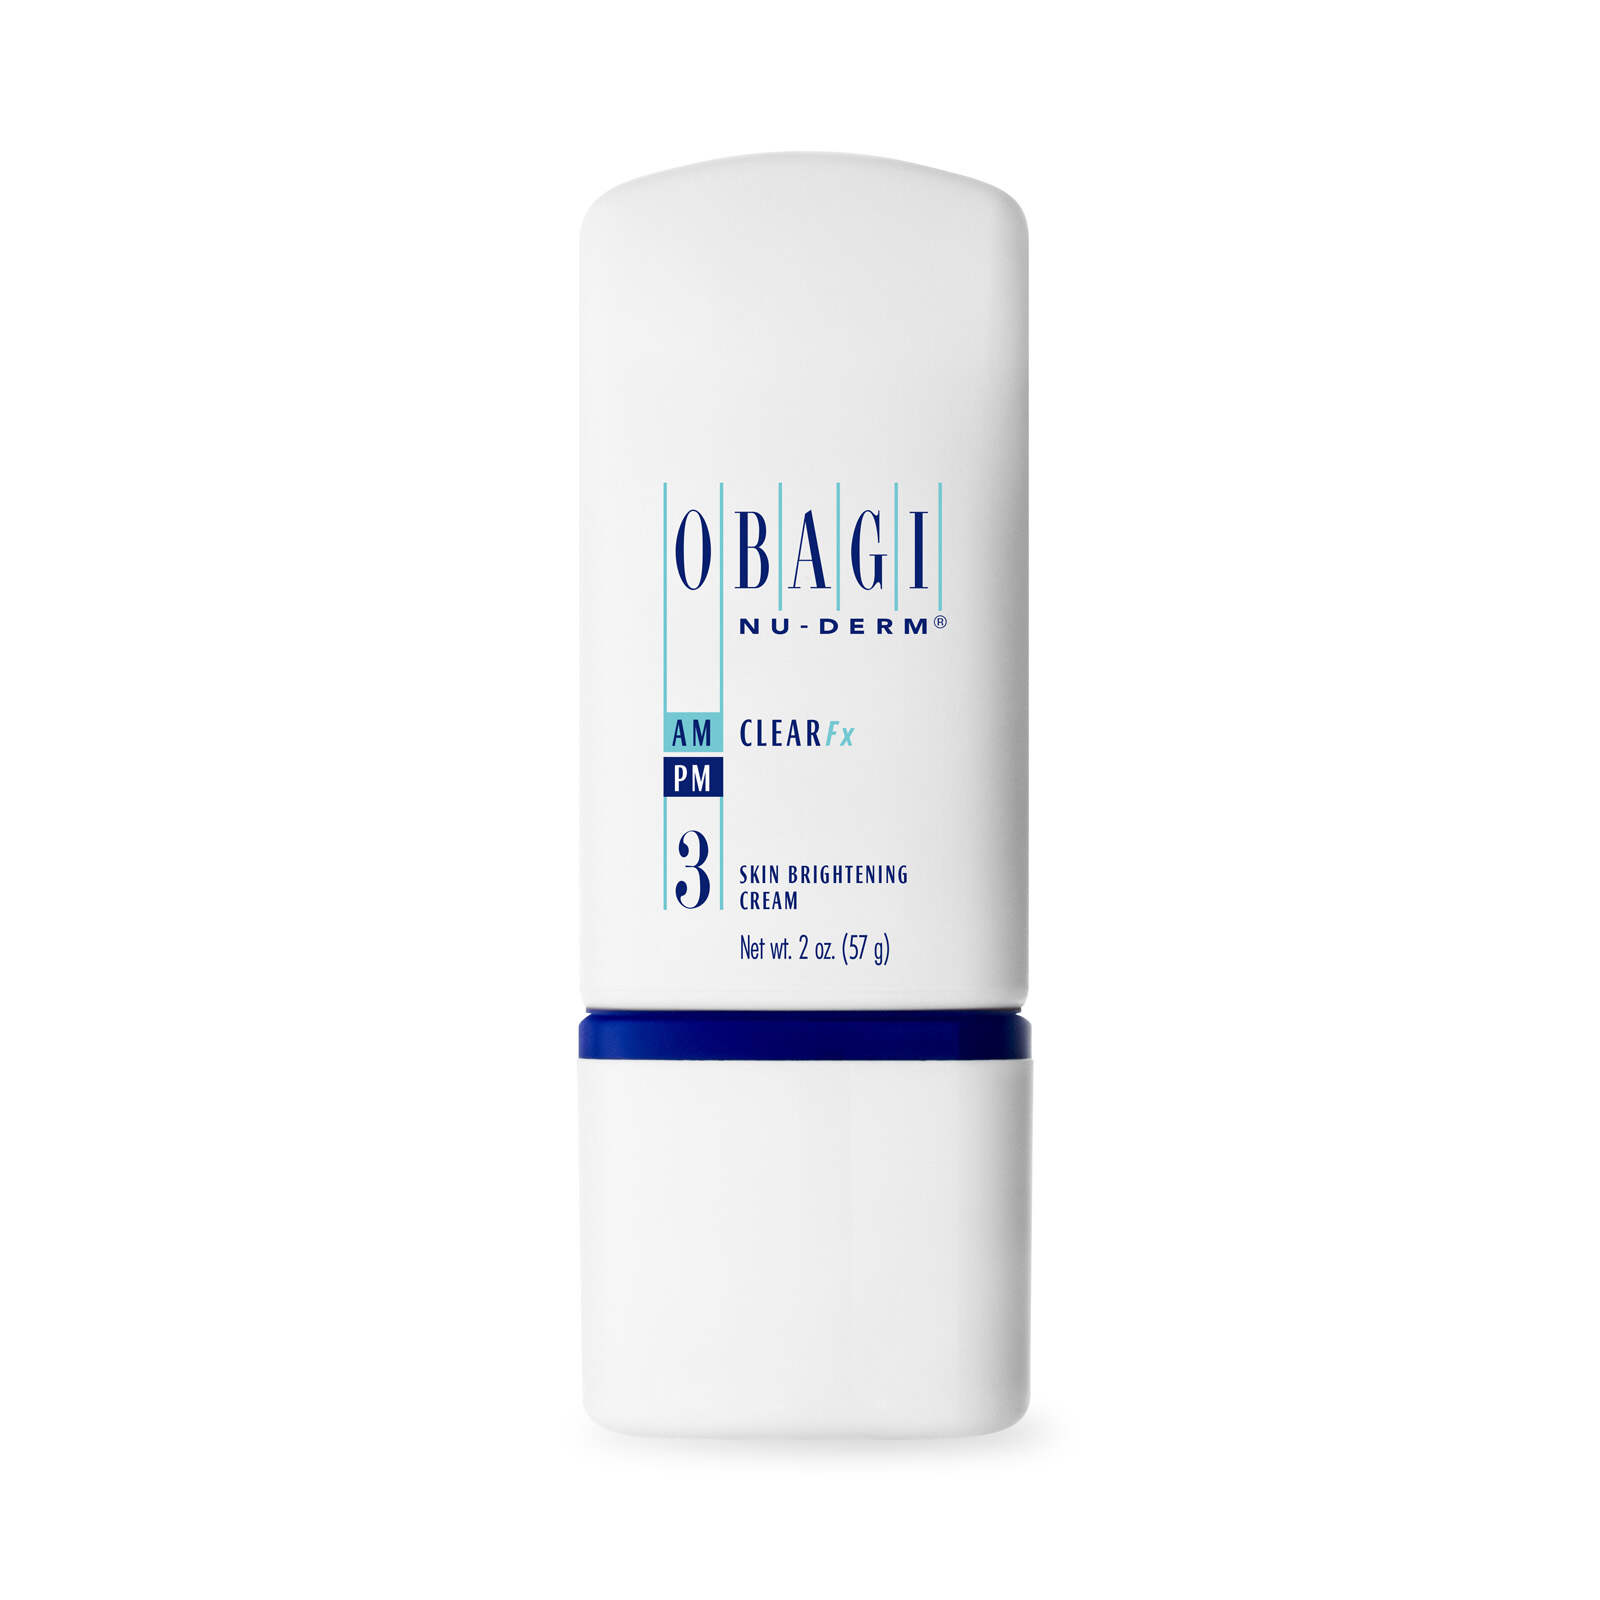 Obagi Skin Brightening Cream